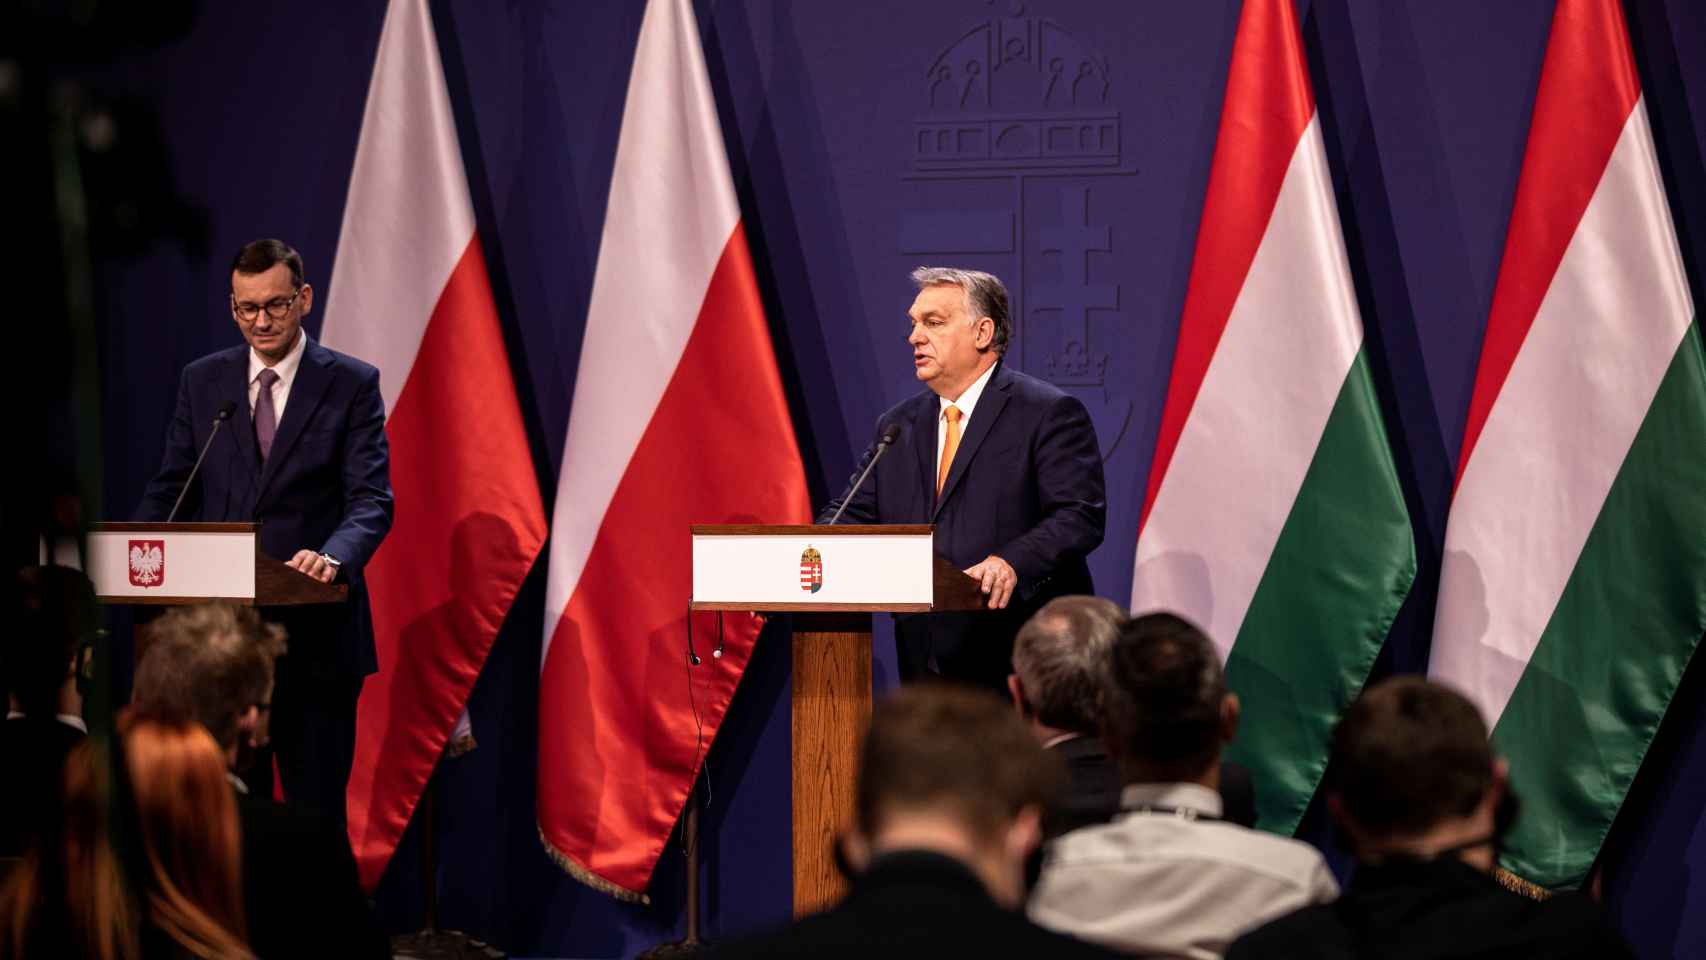 La Ue Pierde La Paciencia Con Polonia Y Hungria Y Baraja Excluirlas De Los Fondos